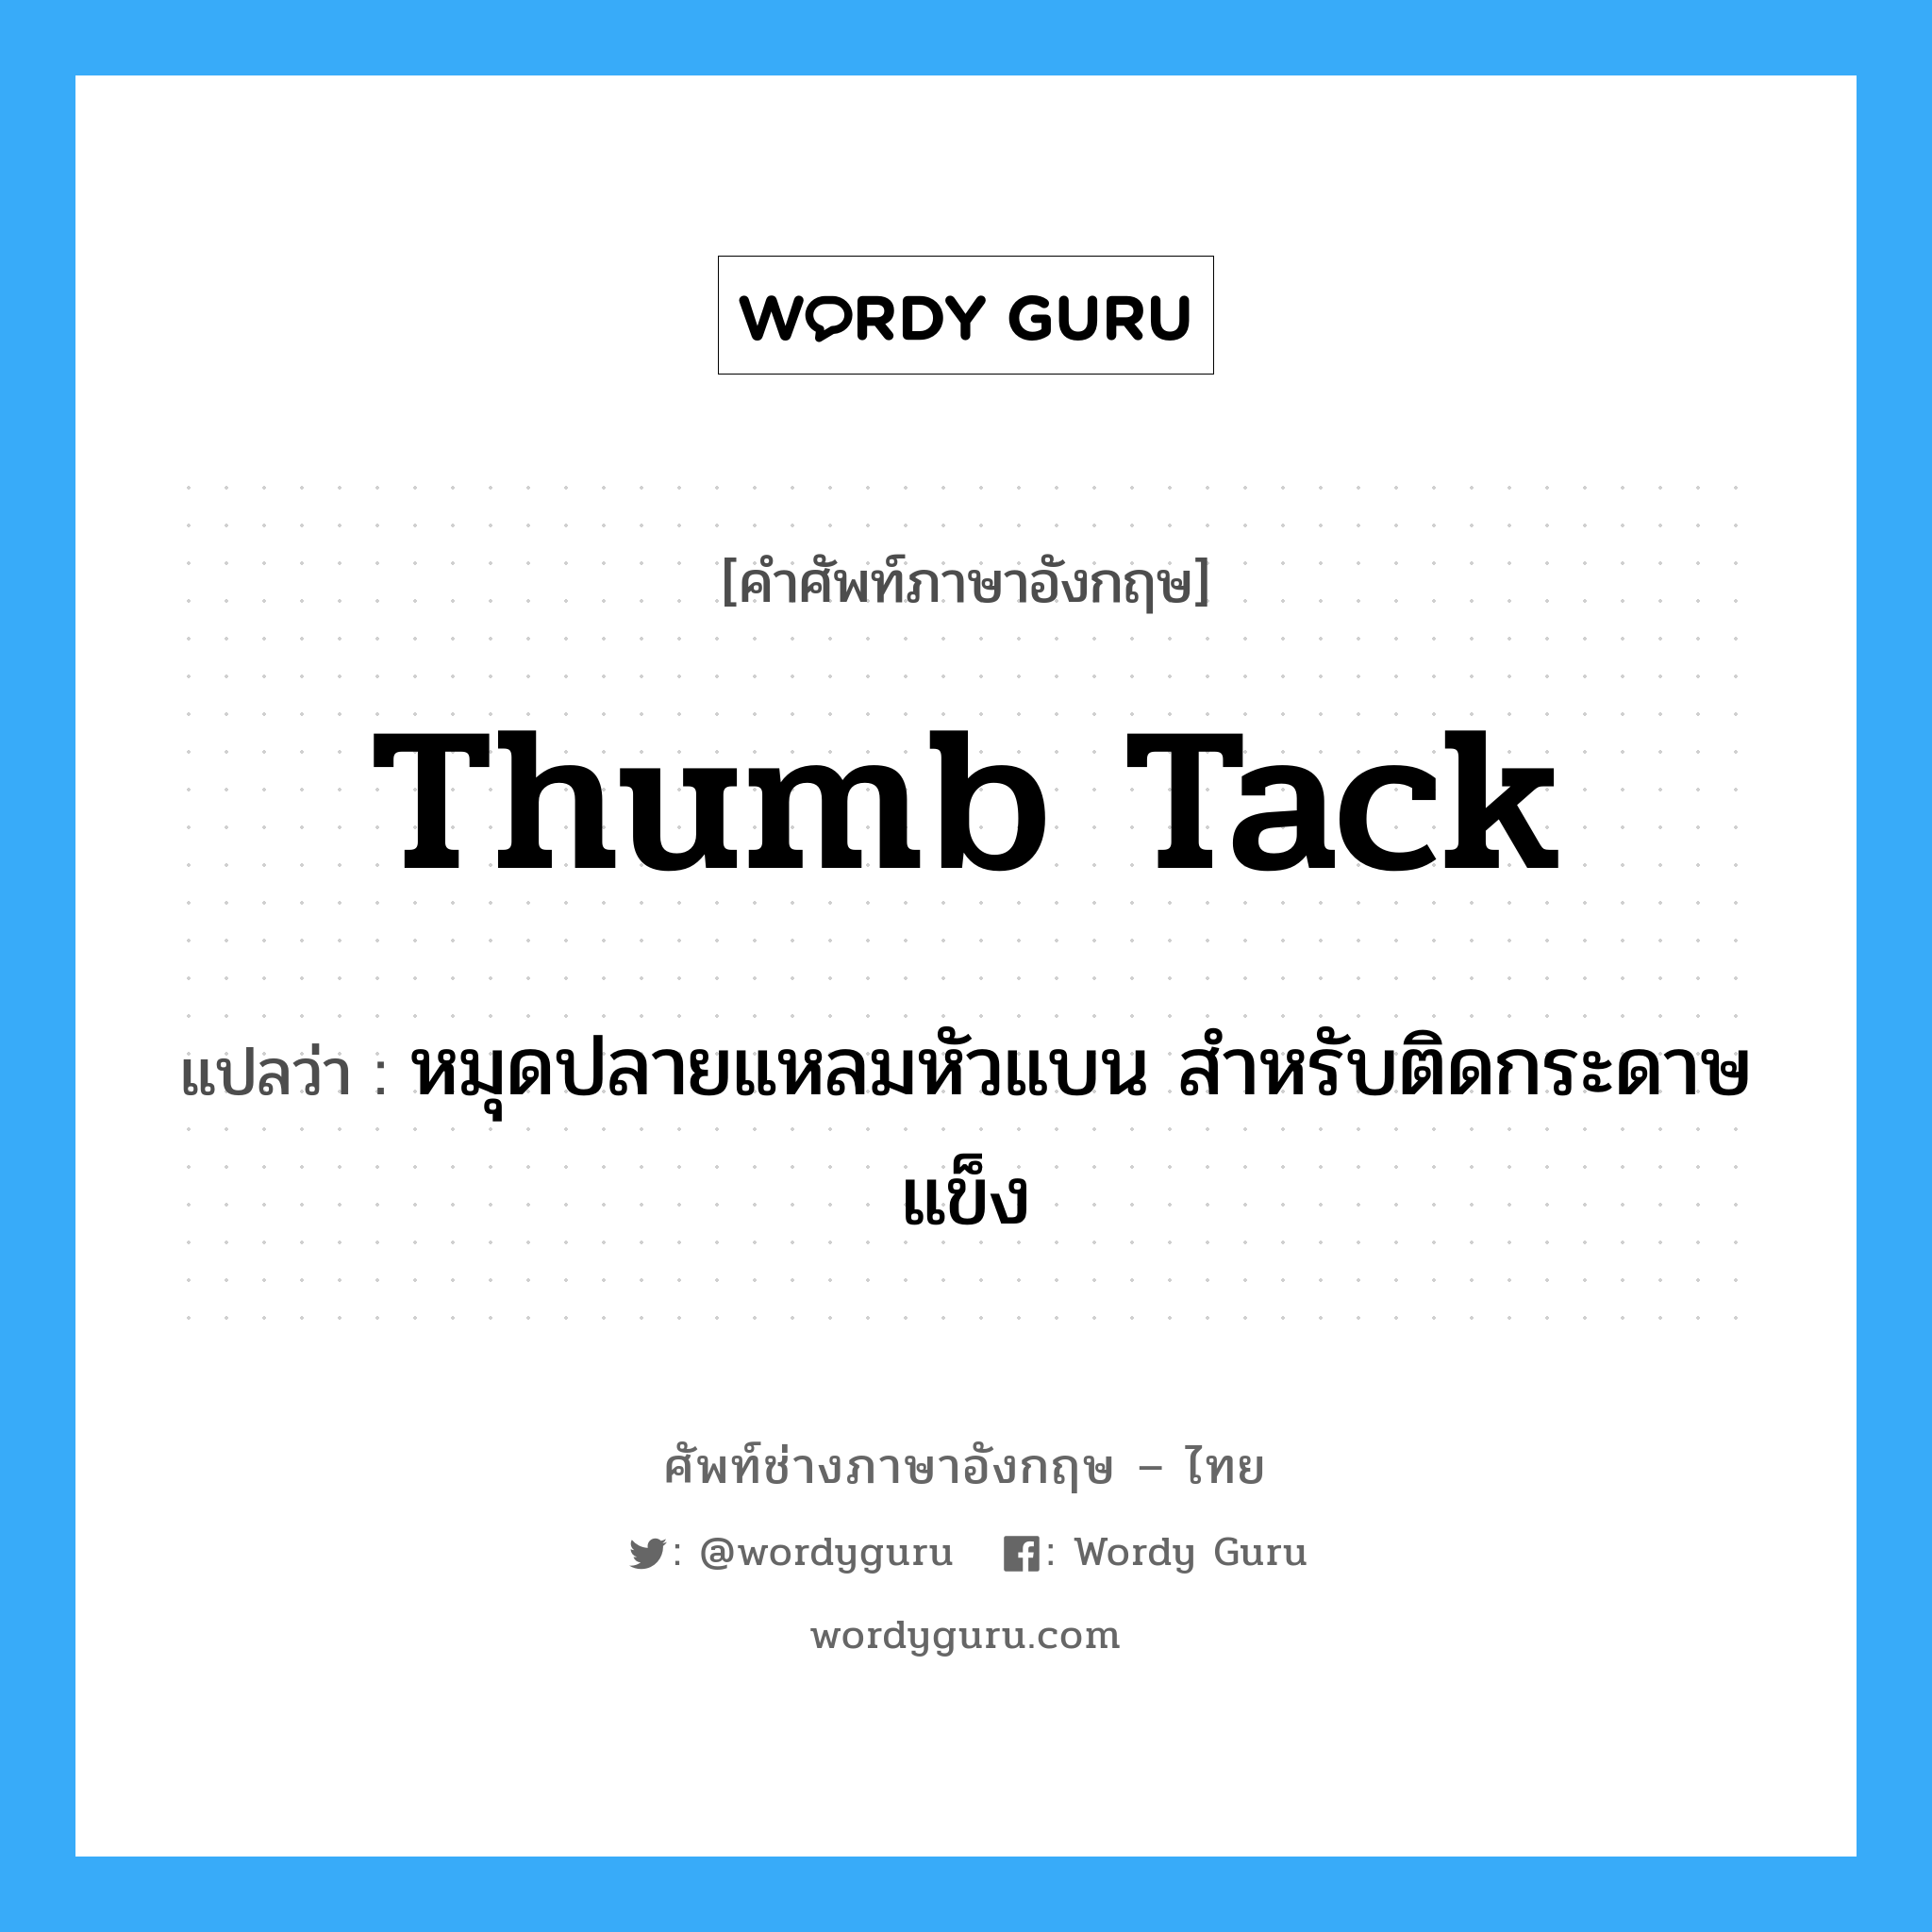 thumb tack แปลว่า?, คำศัพท์ช่างภาษาอังกฤษ - ไทย thumb tack คำศัพท์ภาษาอังกฤษ thumb tack แปลว่า หมุดปลายแหลมหัวแบน สำหรับติดกระดาษแข็ง